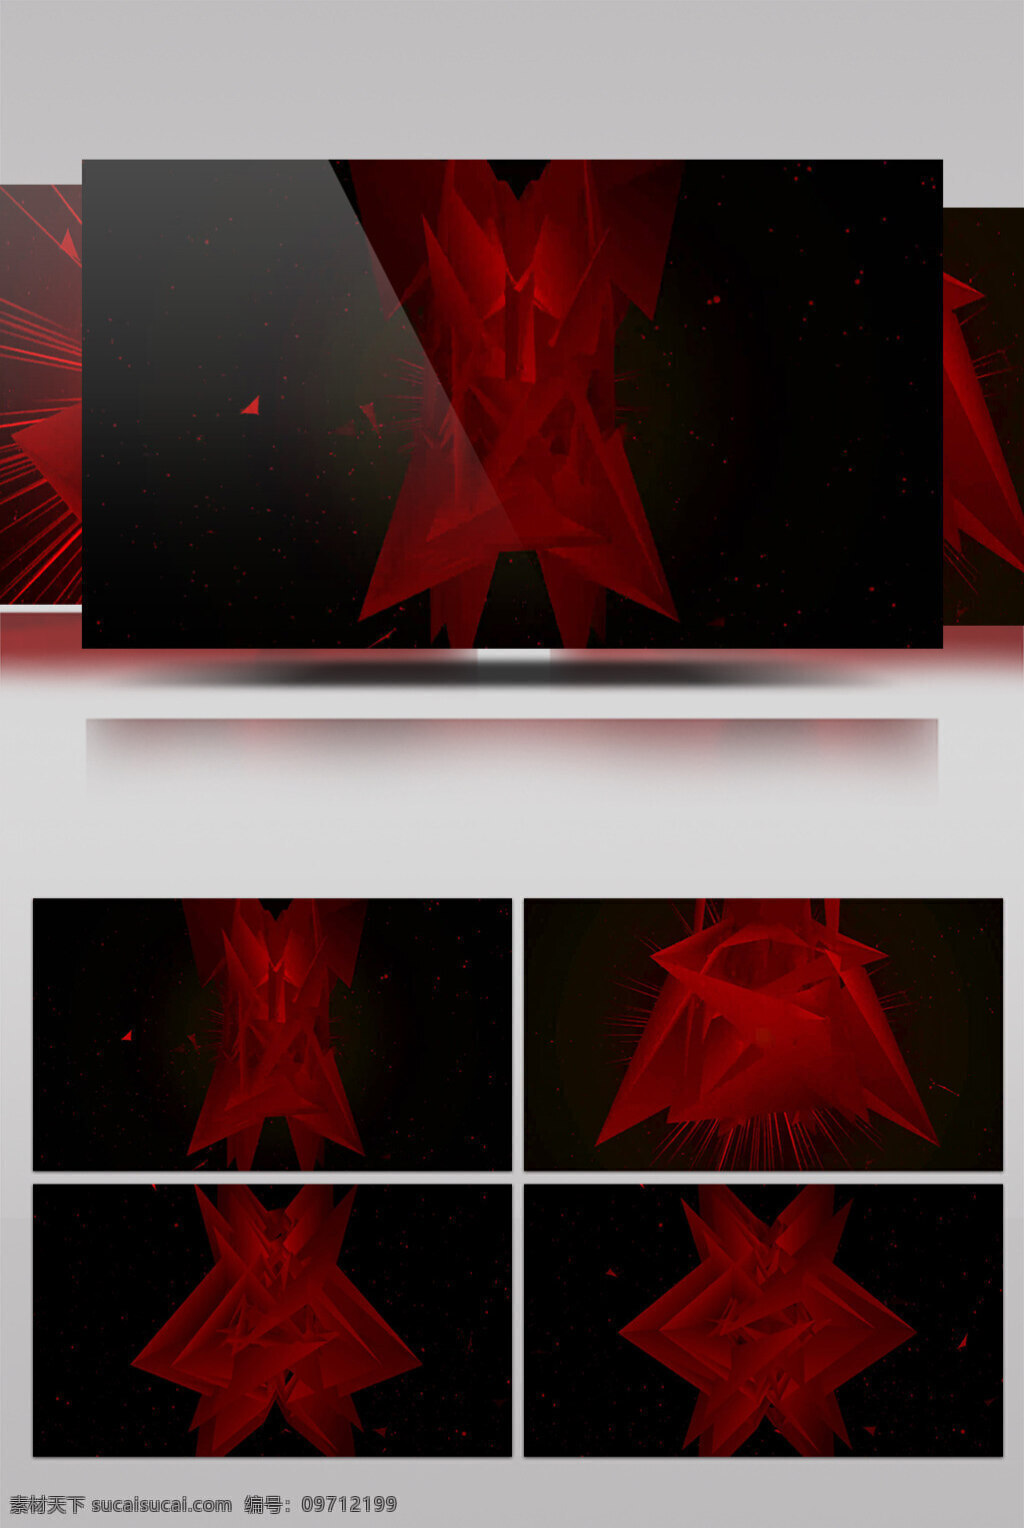 魔幻 暗红 动态 视频 魔幻暗红色 动态灯光 华丽流转 光芒四射 3d视频素材 特效视频素材